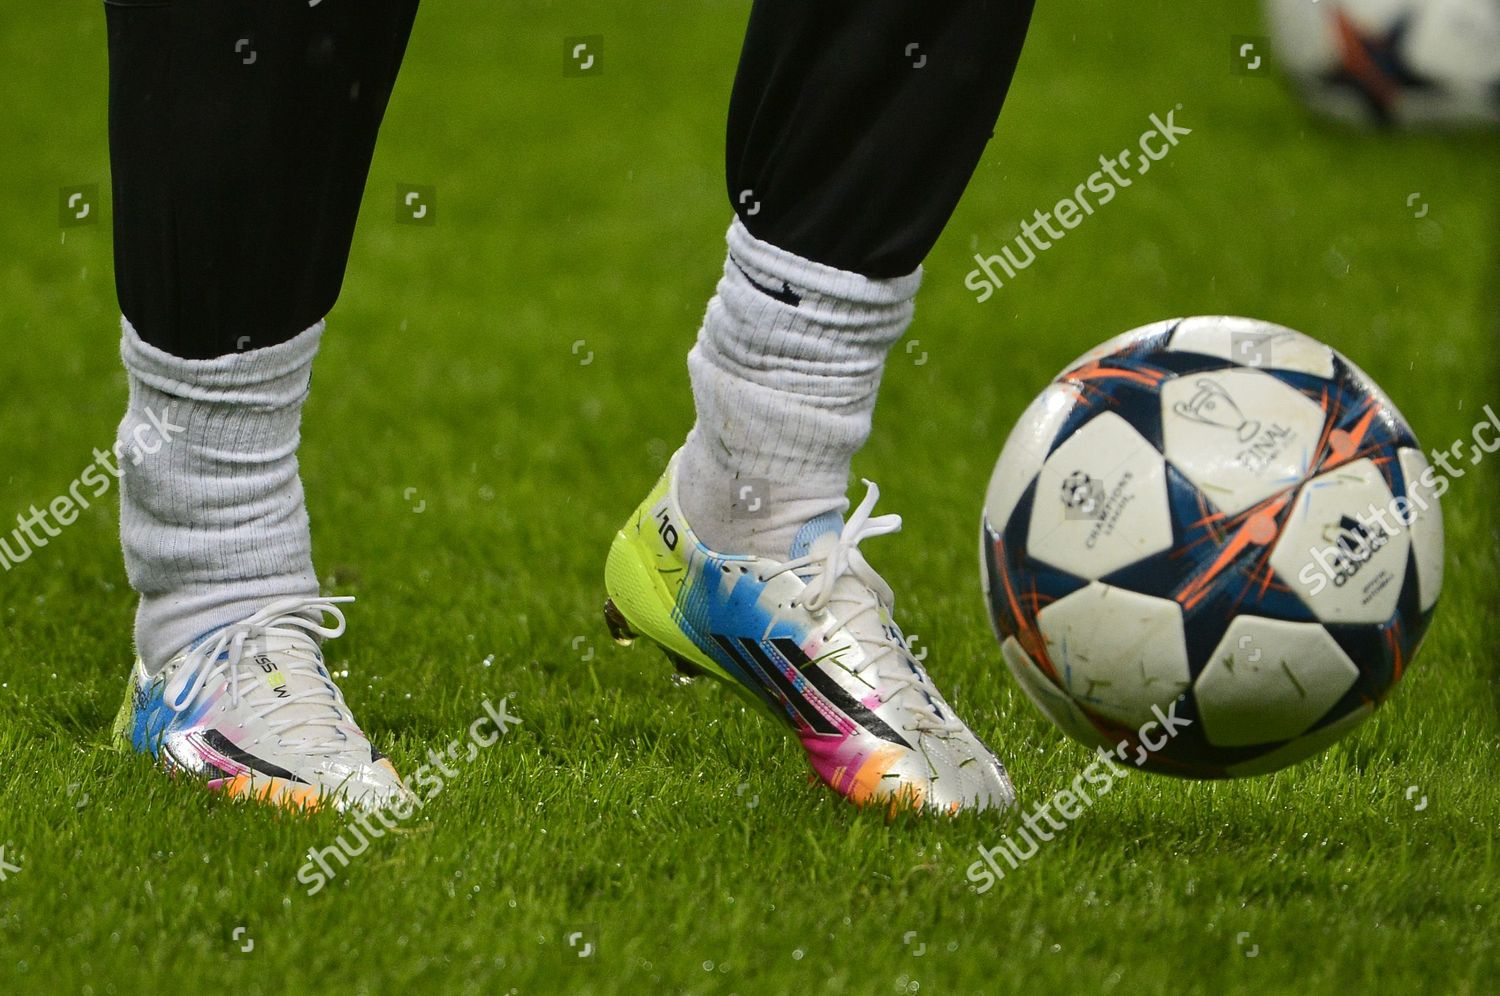 adidas football boots 2013